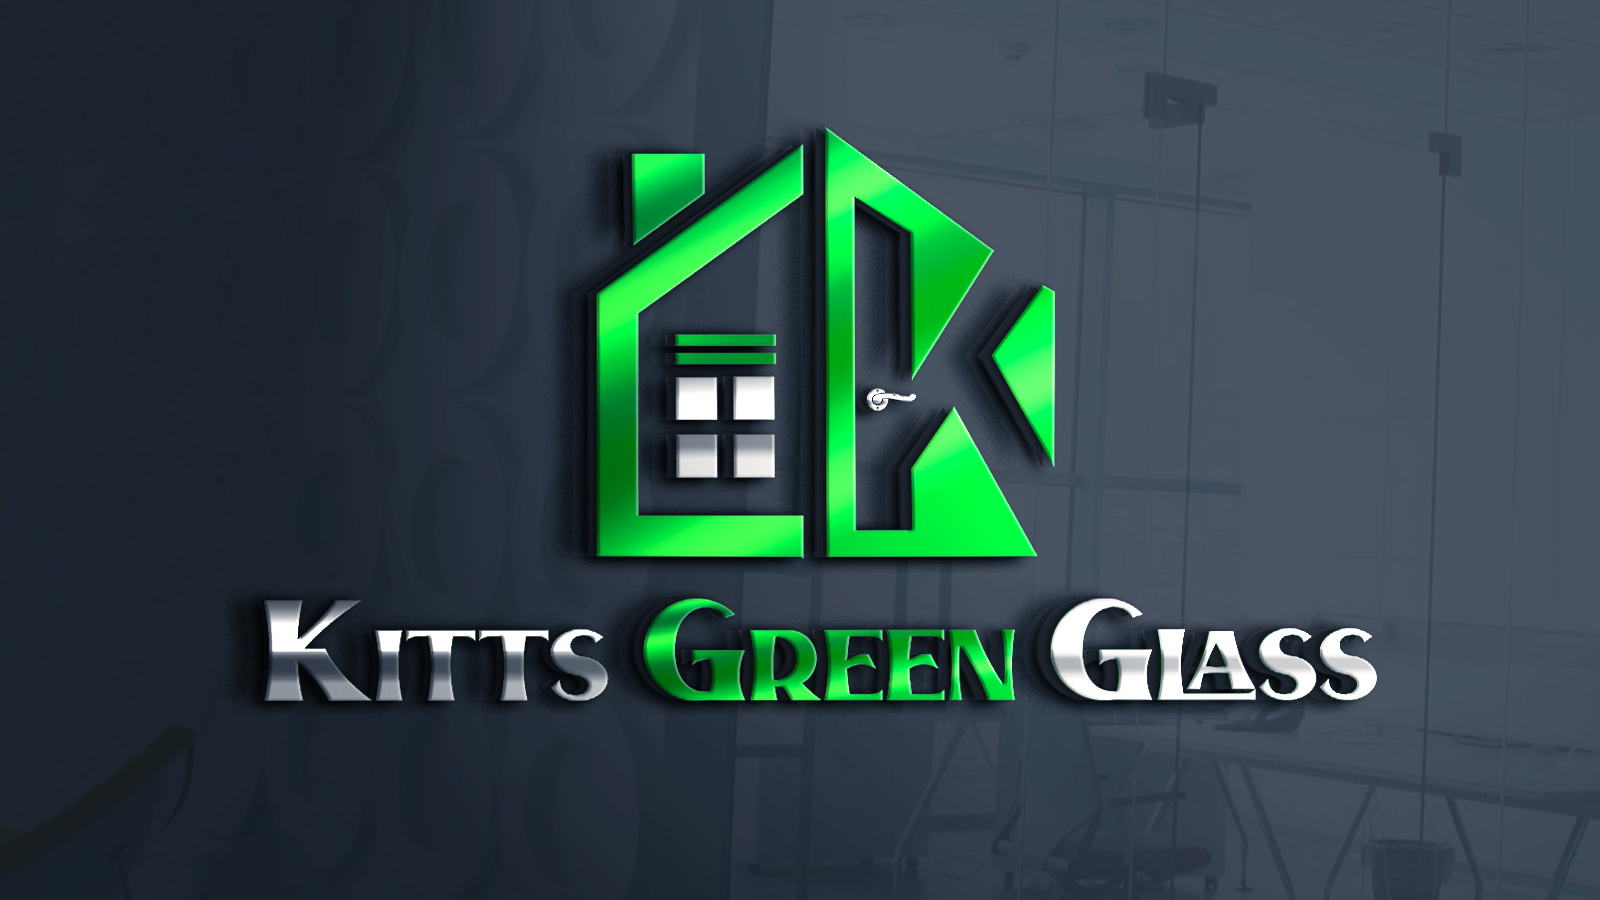 Kitts Green Glass and Windows LTD Birmingham 01217 847138